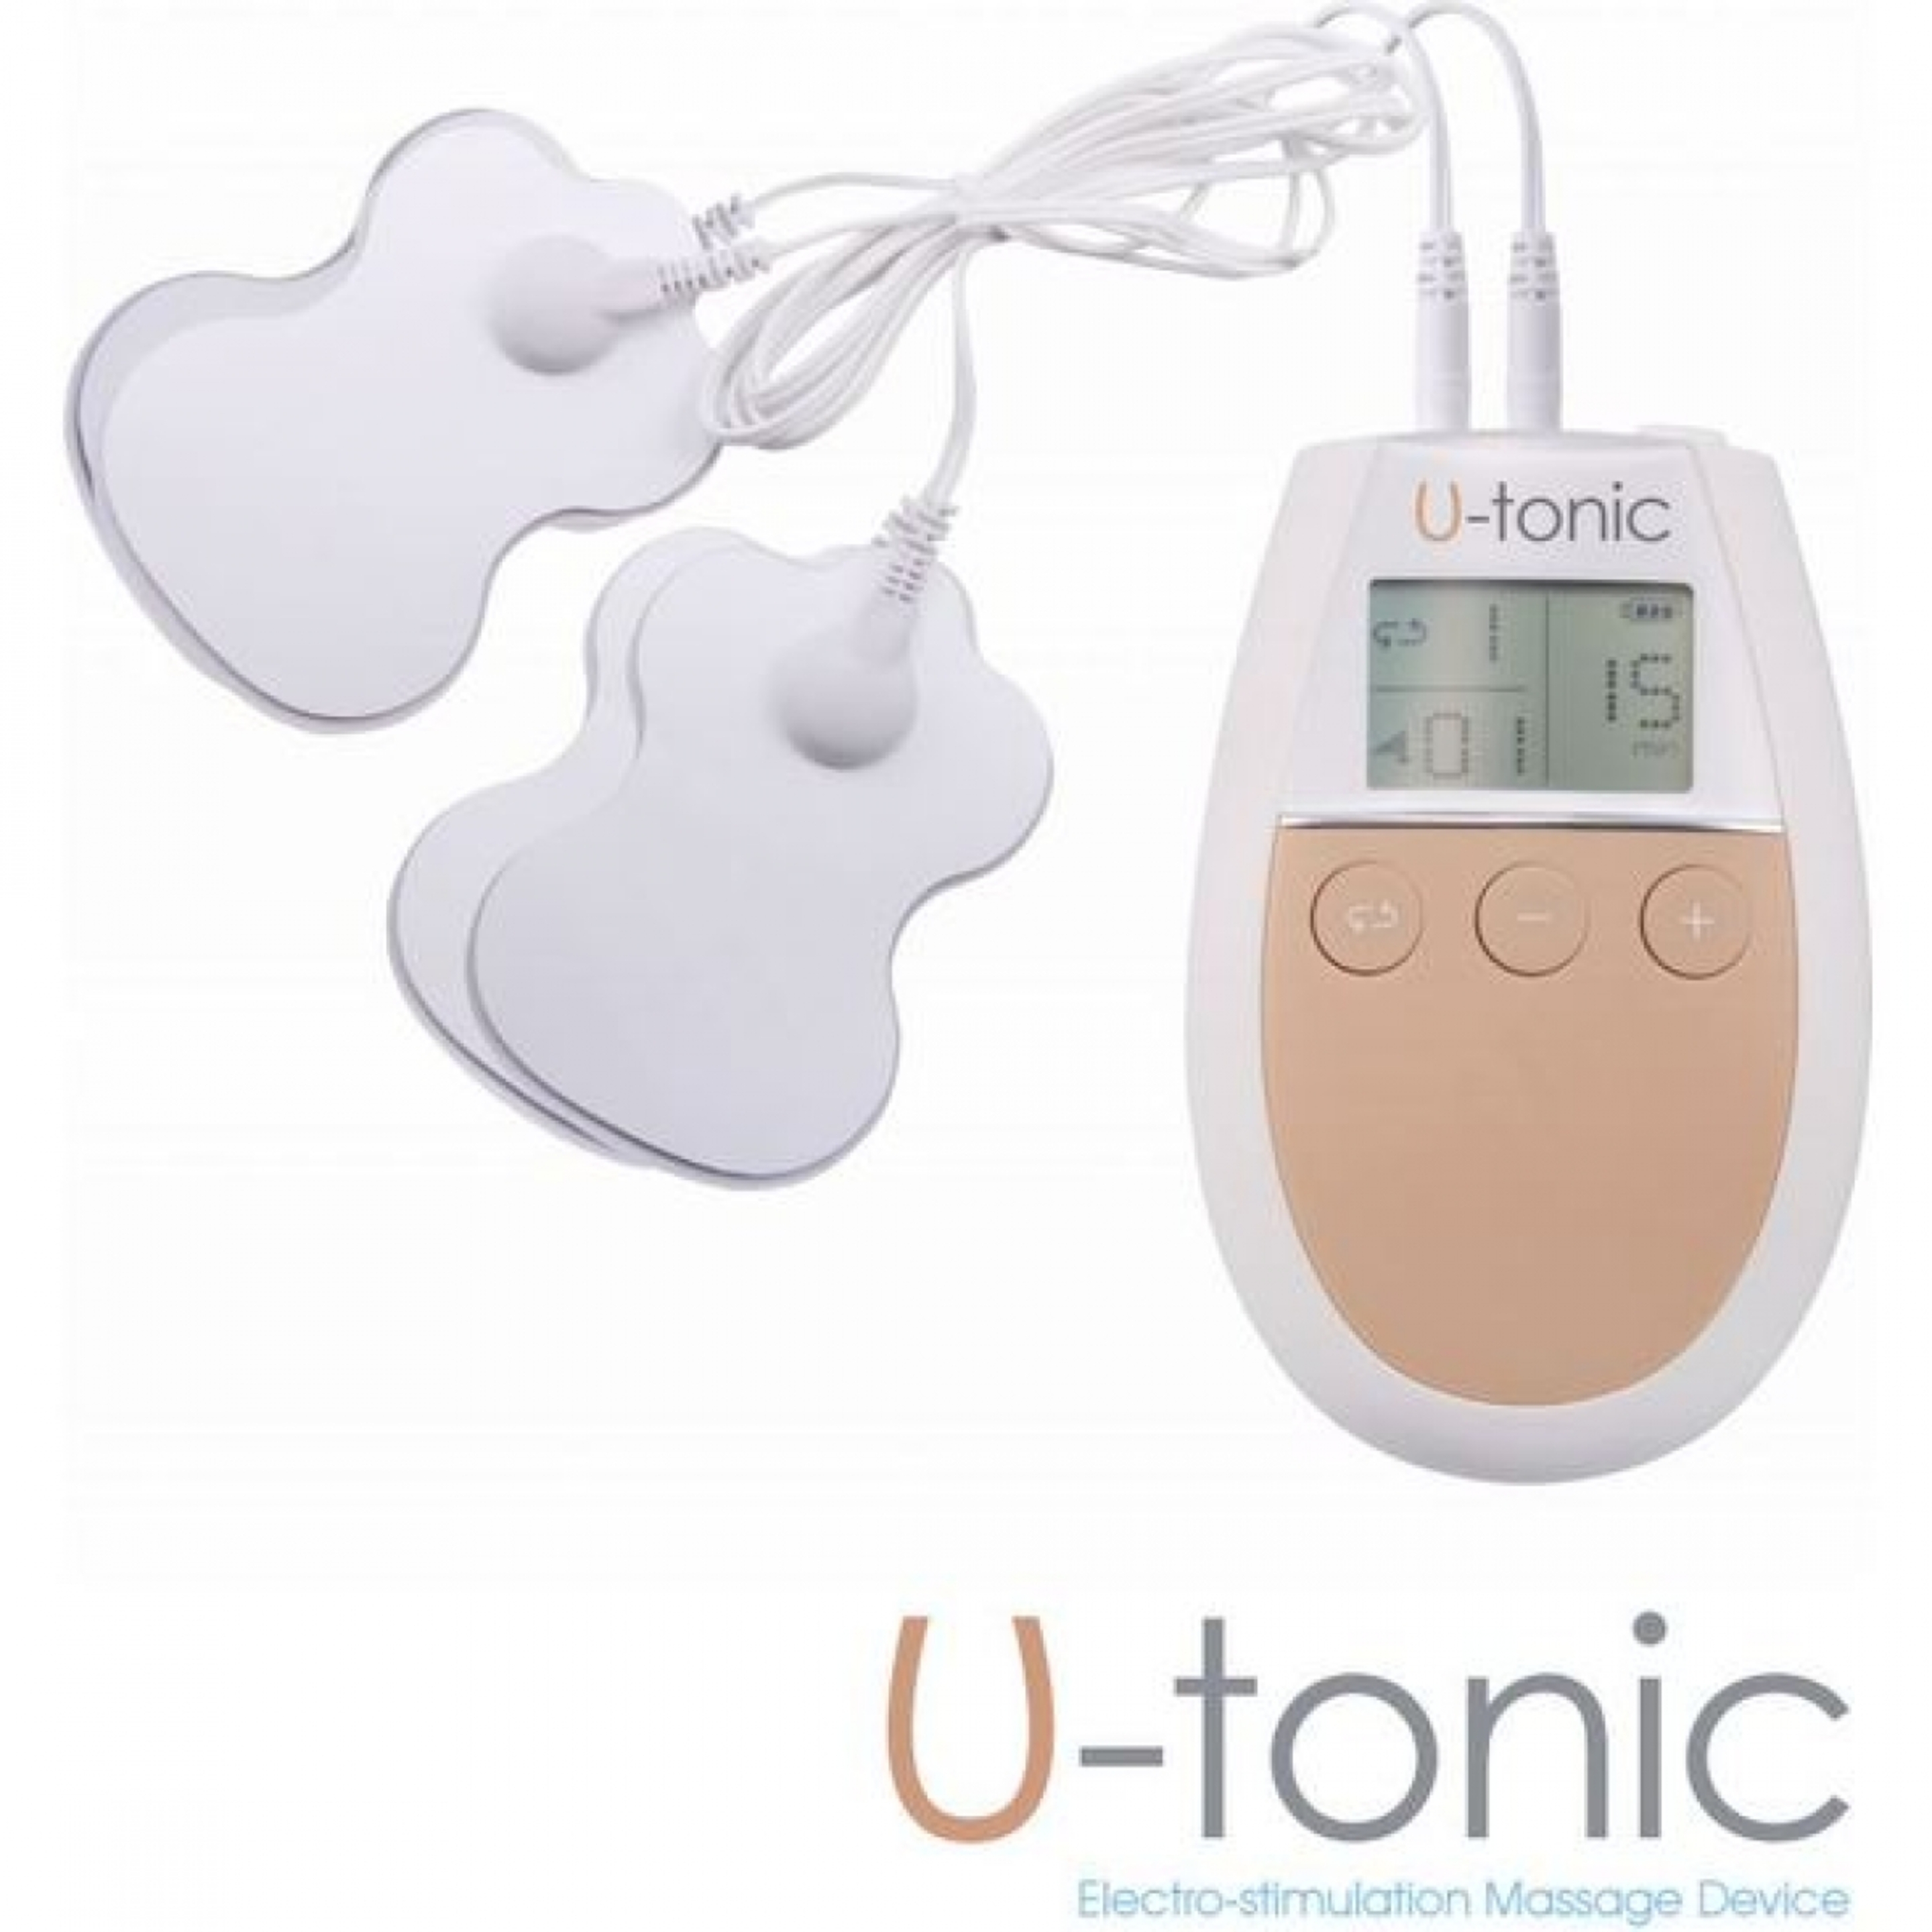 Dispositivo Electroestimulador Muscular U-tonic  Para Tonificar Y Reafirmar Los Músculos - U-tonic  MKP